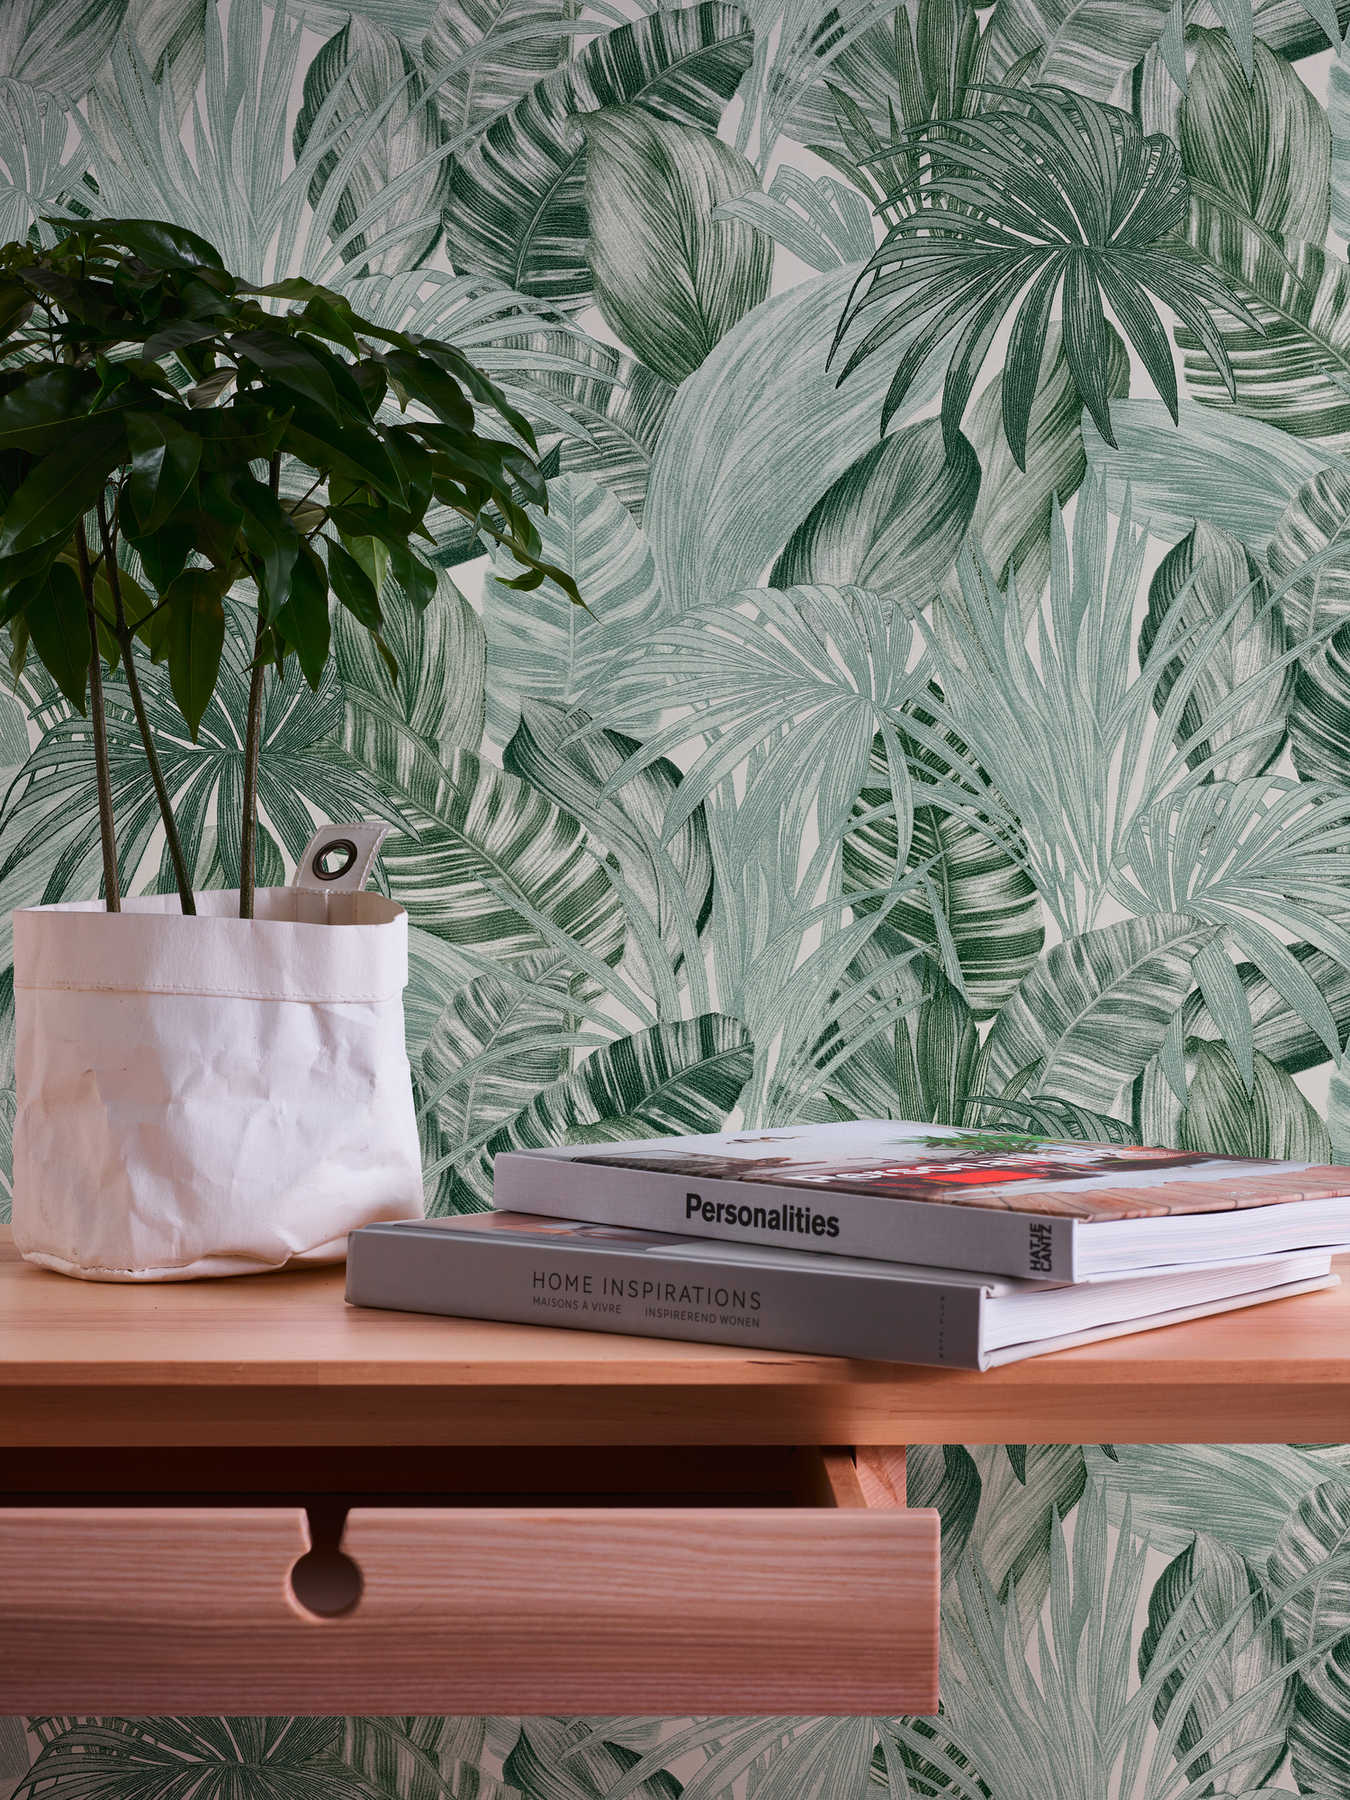             Papier peint à motifs avec feuilles dans le style dessin - vert, blanc
        